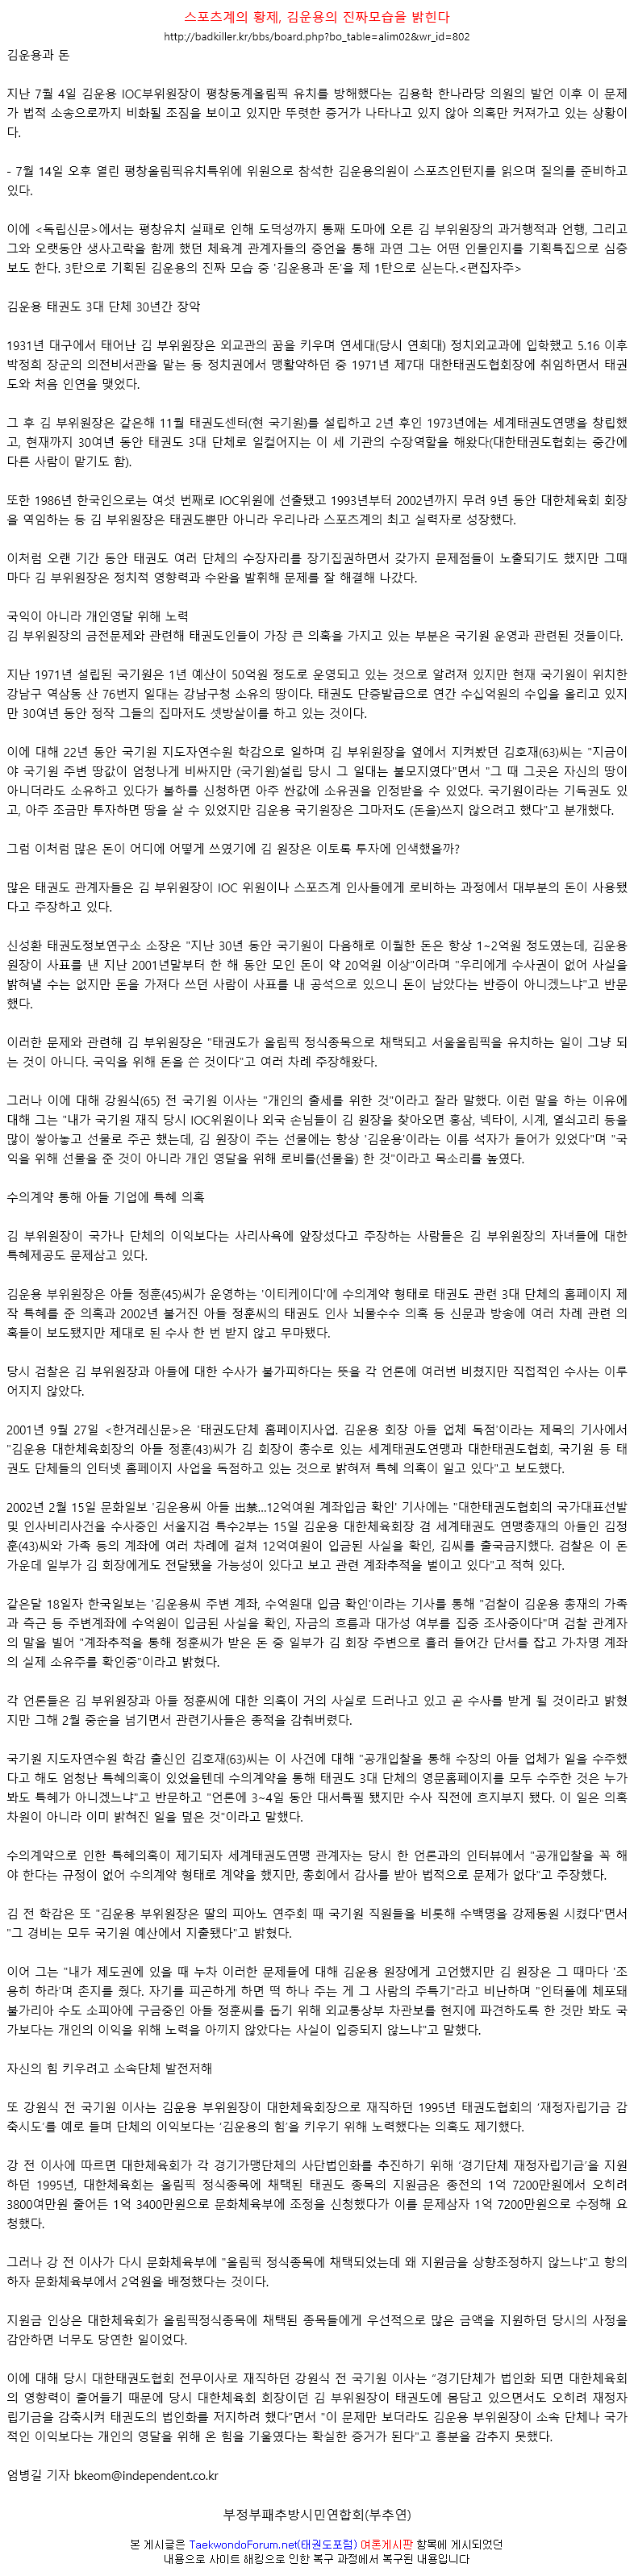 20181215_스포츠계의황제김운용의진짜모습을밝힌다.gif